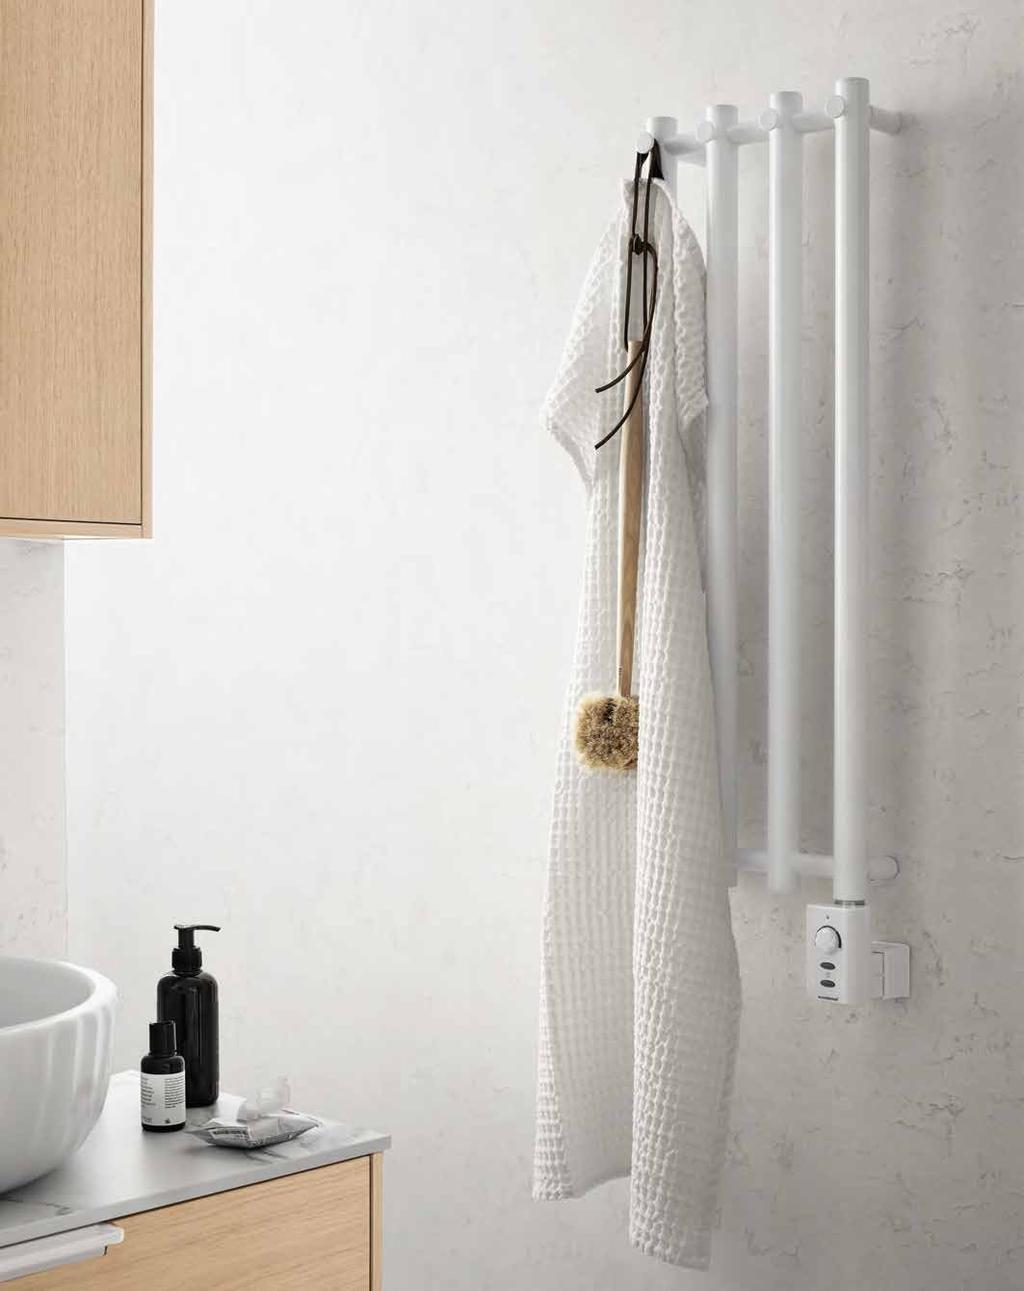 En vandbåren håndklædetørrer kan også drives udelukkende på el, og så kræves der en elpatron.